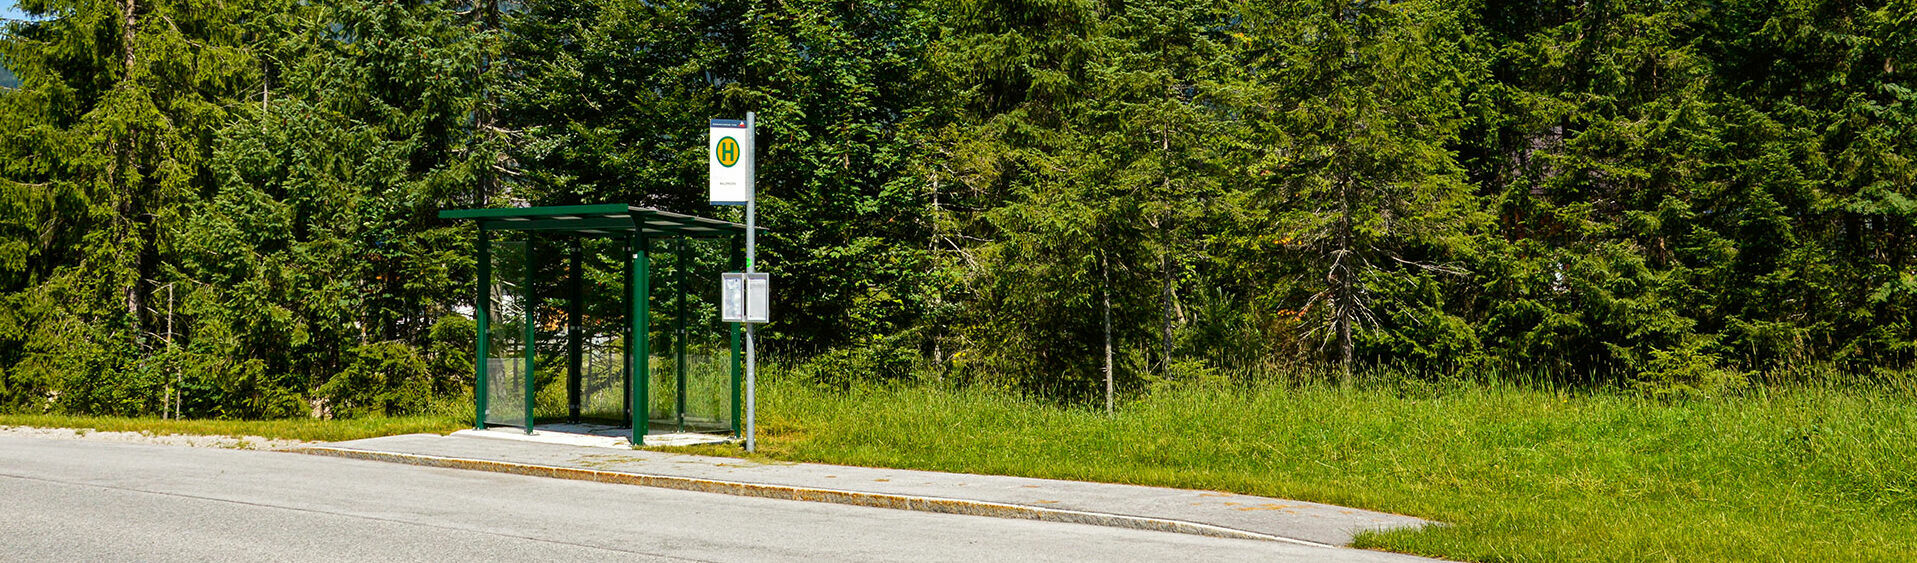 Der öffentliche Regionsbus, der regelmäßig zwischen den Orten Achenkirch, Maurach, Pertisau, Steinberg und Wiesing verkehrt, kann gratis mit der AchenseeCard genutzt werden.